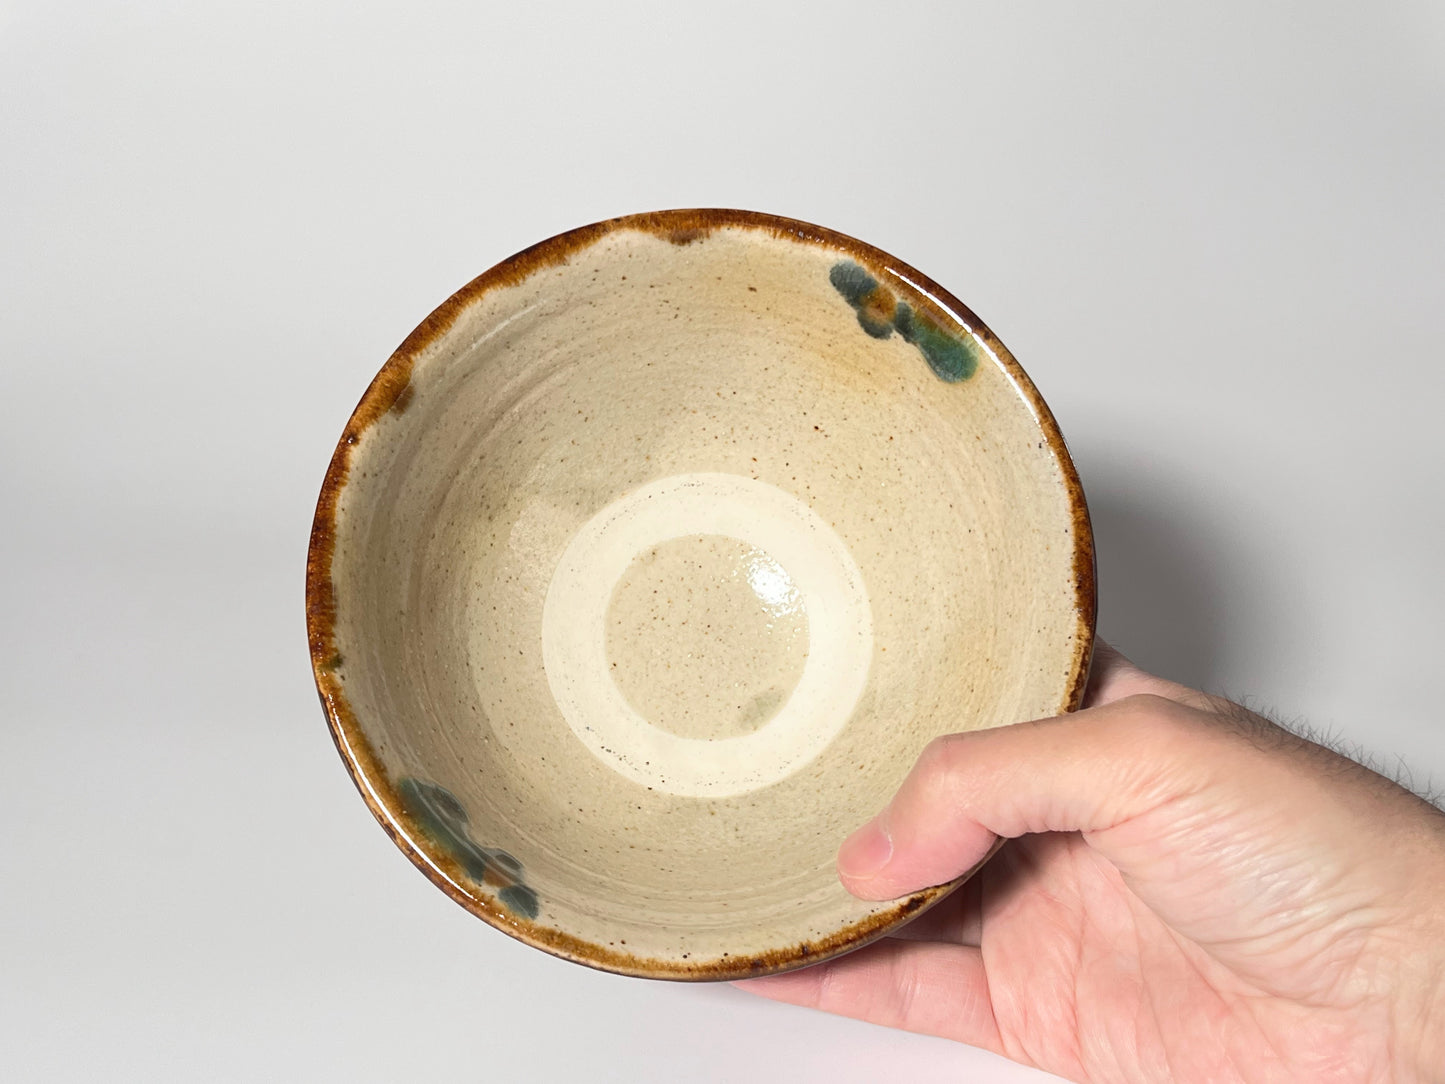 Kimano pottery -Rice bowl 5 inch- Hydrangea